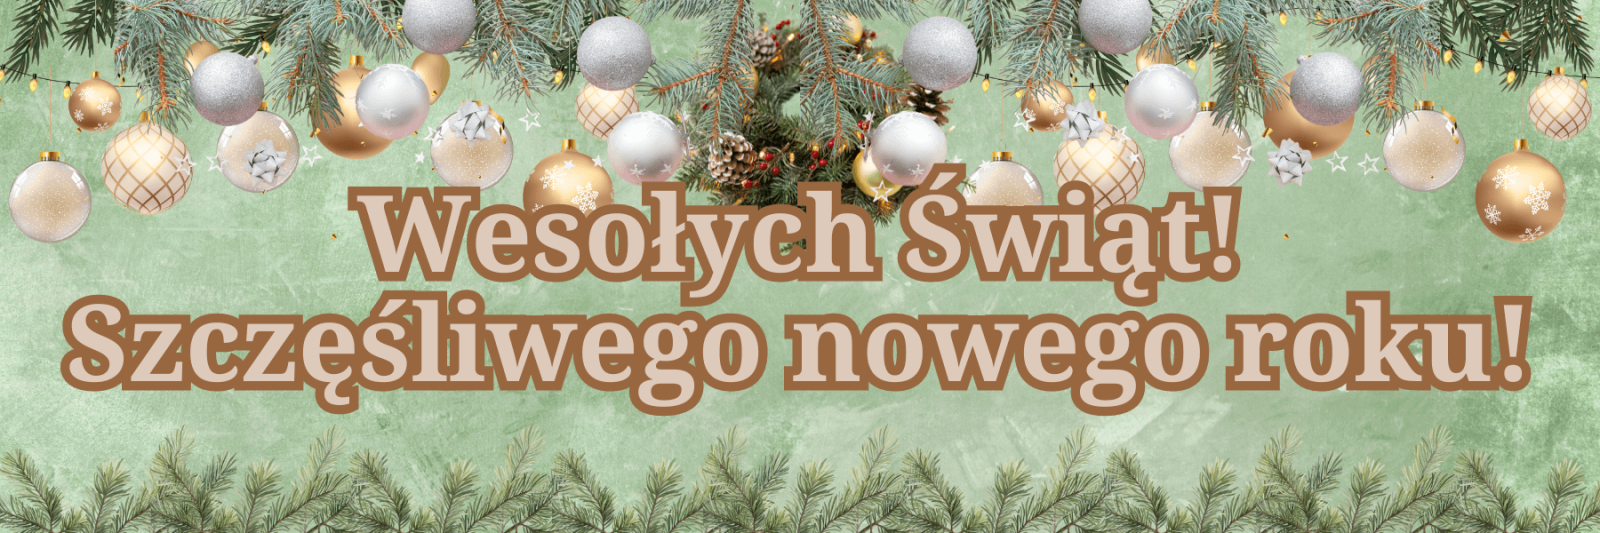 Frohe Weihnachten und ein glückliches Neues Jahr! auf Polnisch